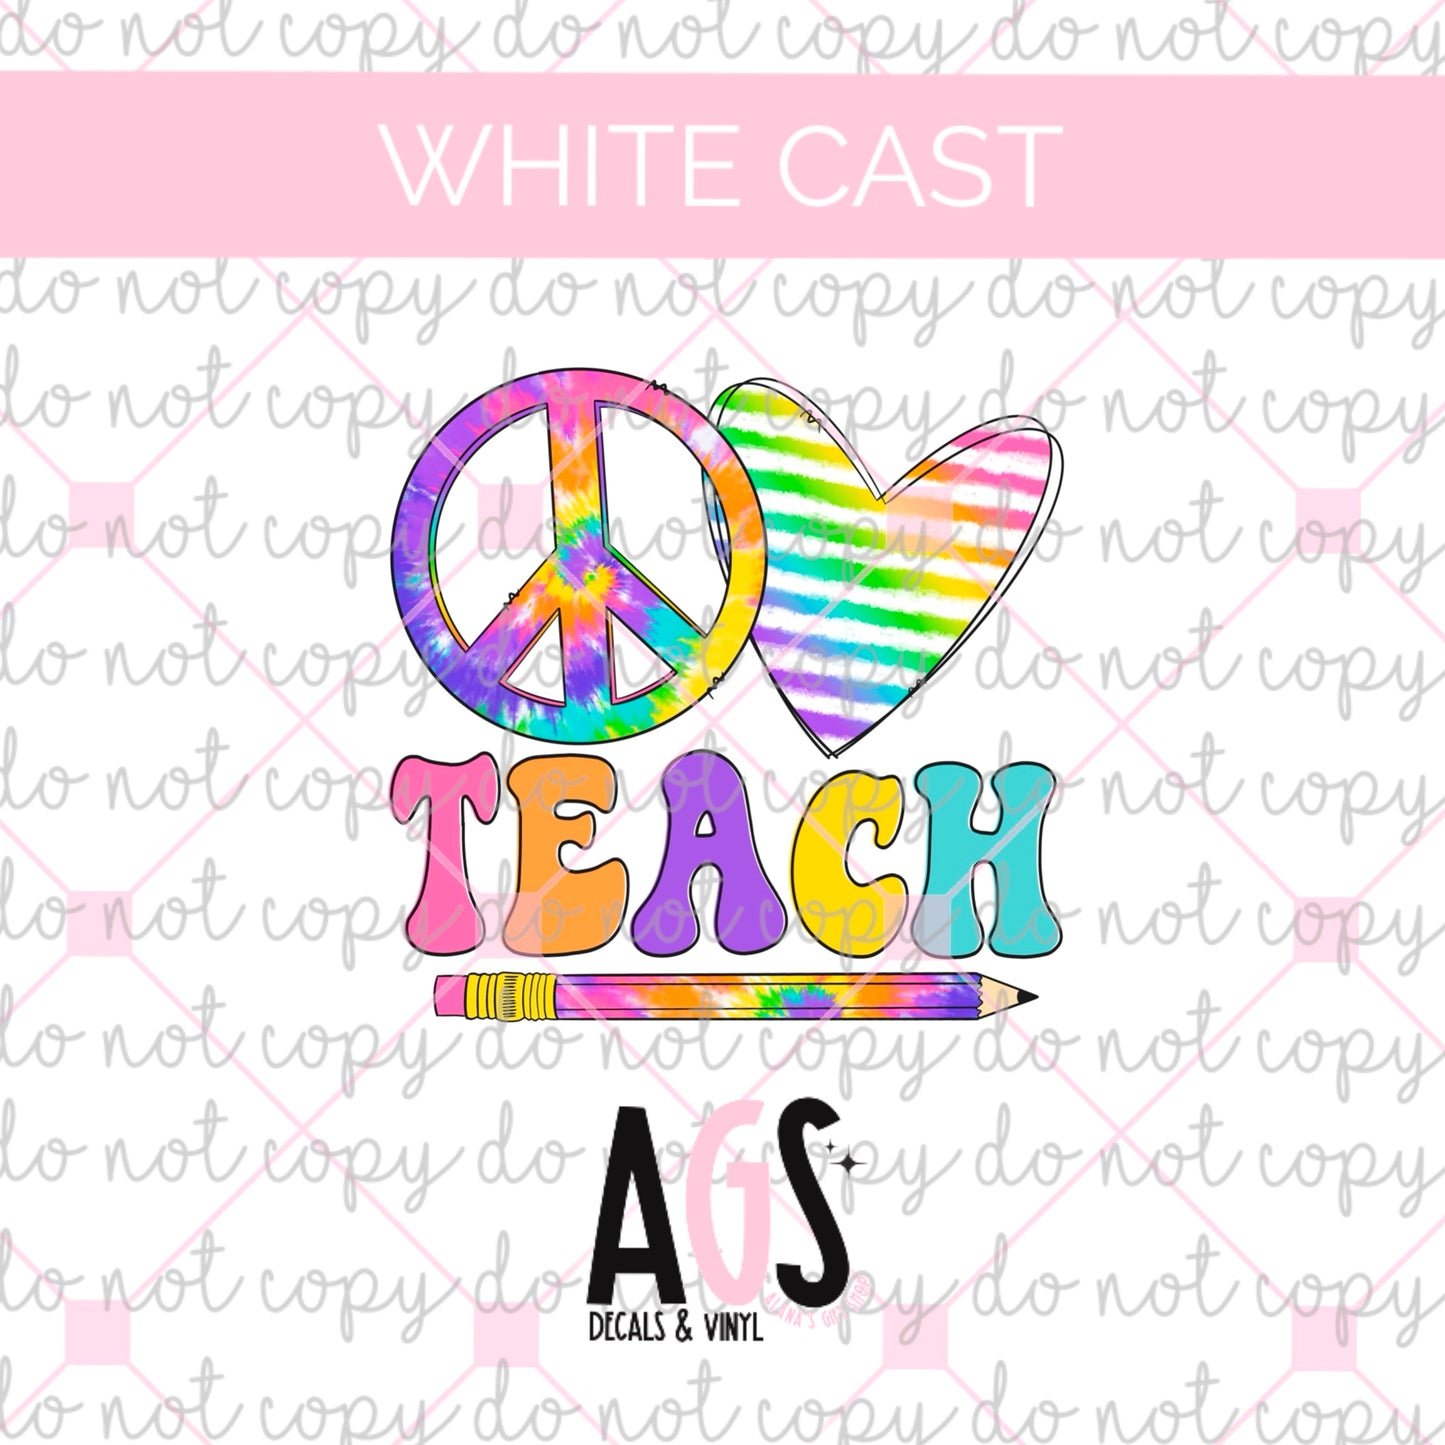 WC-566 Peace Love Teach